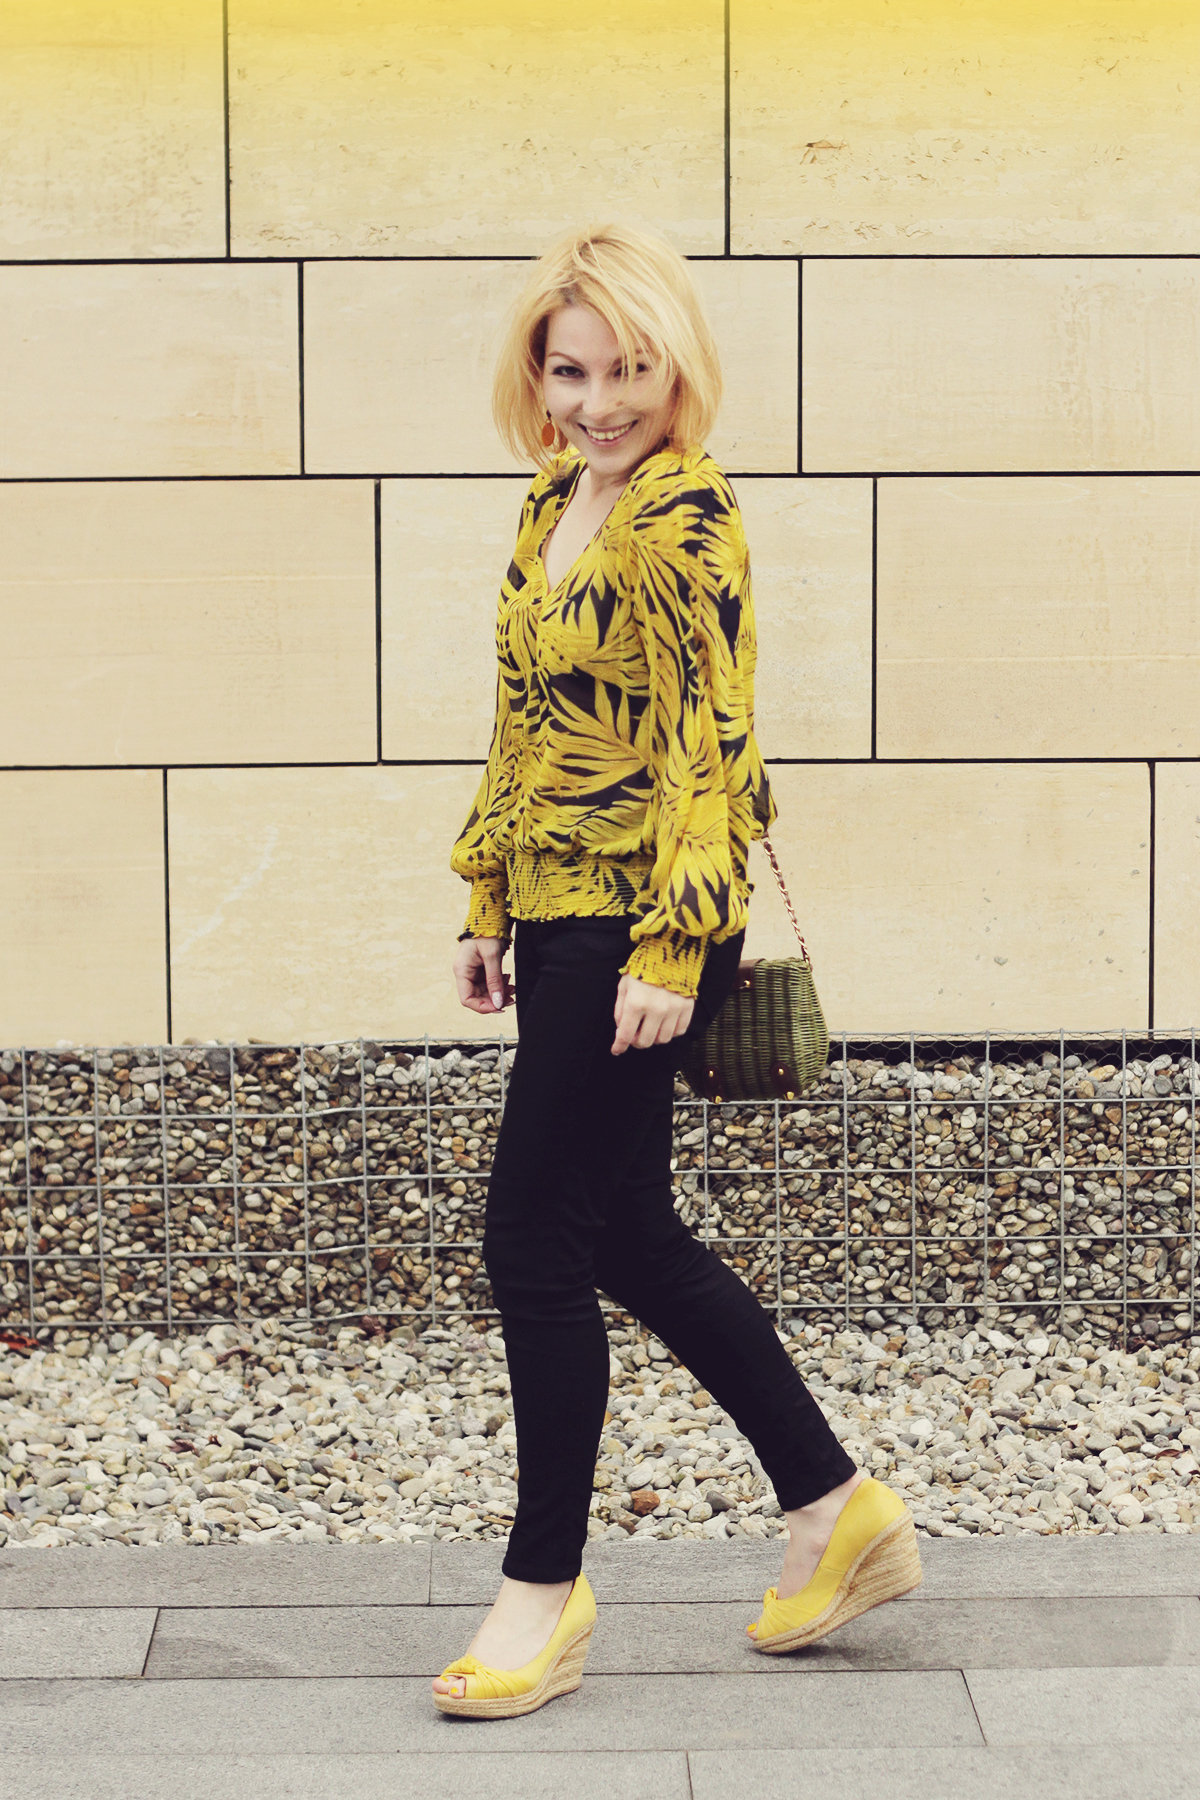 yellow wedges and yellow chiffon pattern blouse